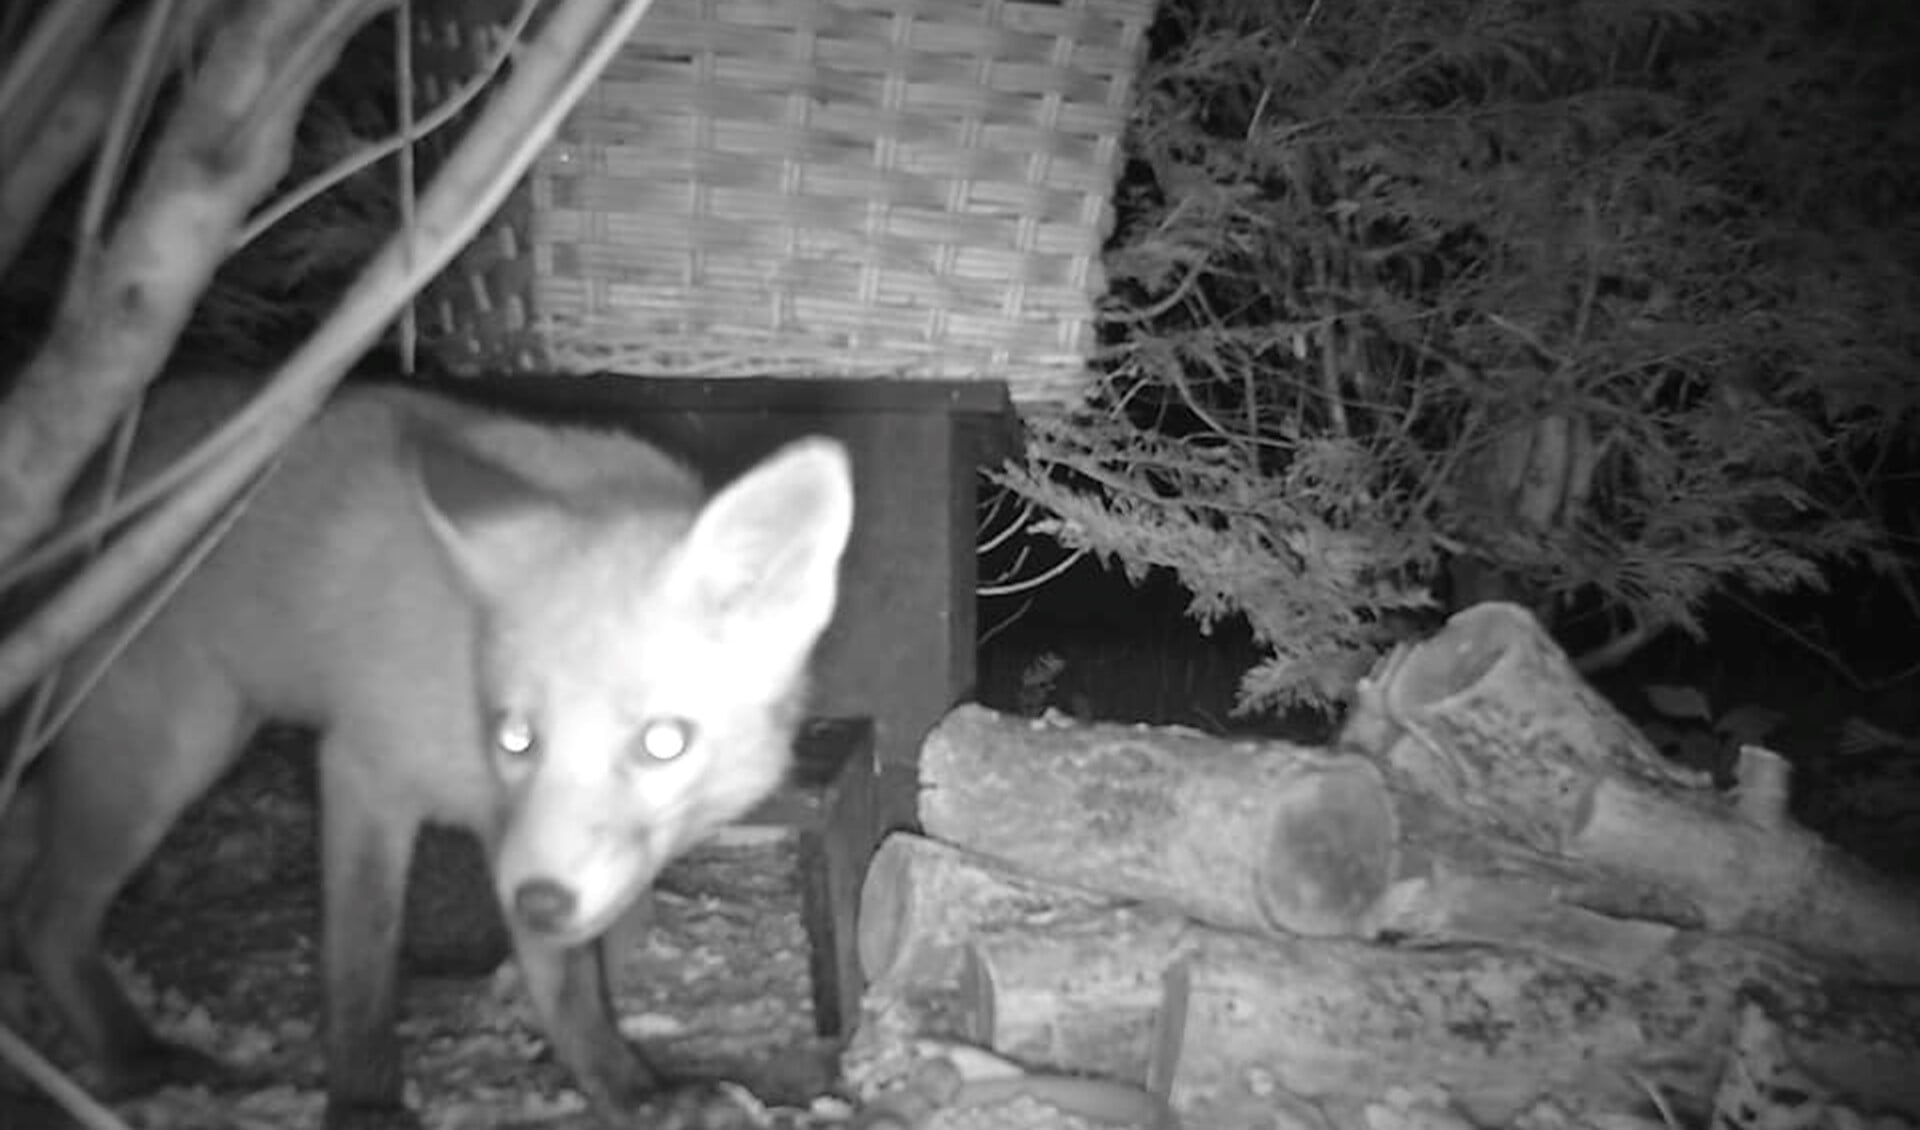 De vos doet zich tegoed aan het voer in de achtertuin van een bewoonster van de Tulpentuin (eigen beelden).